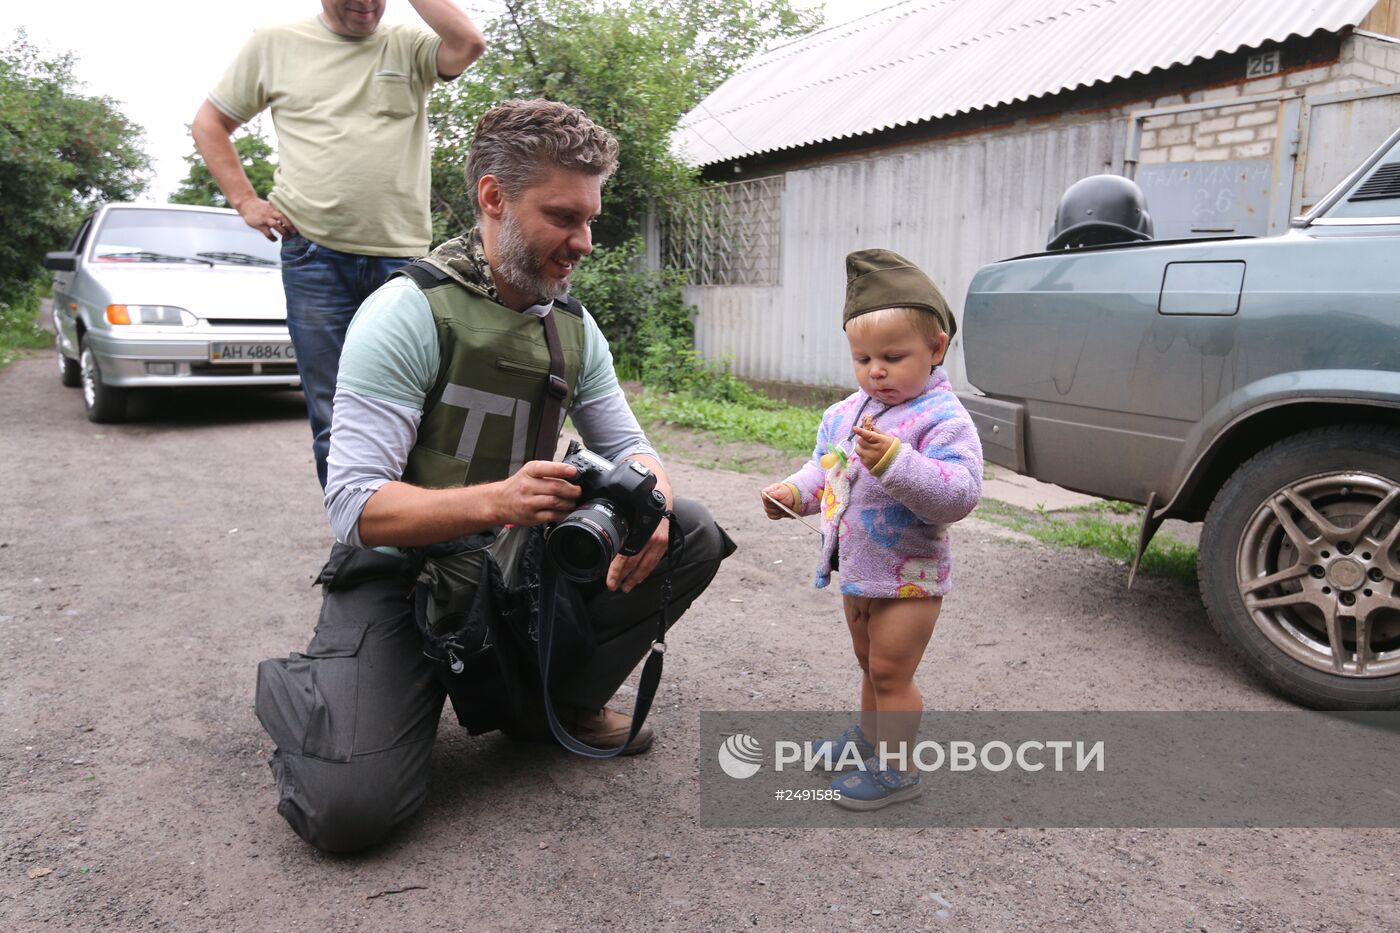 Специальный фотокорреспондент МИА "Россия сегодня" Андрей Стенин